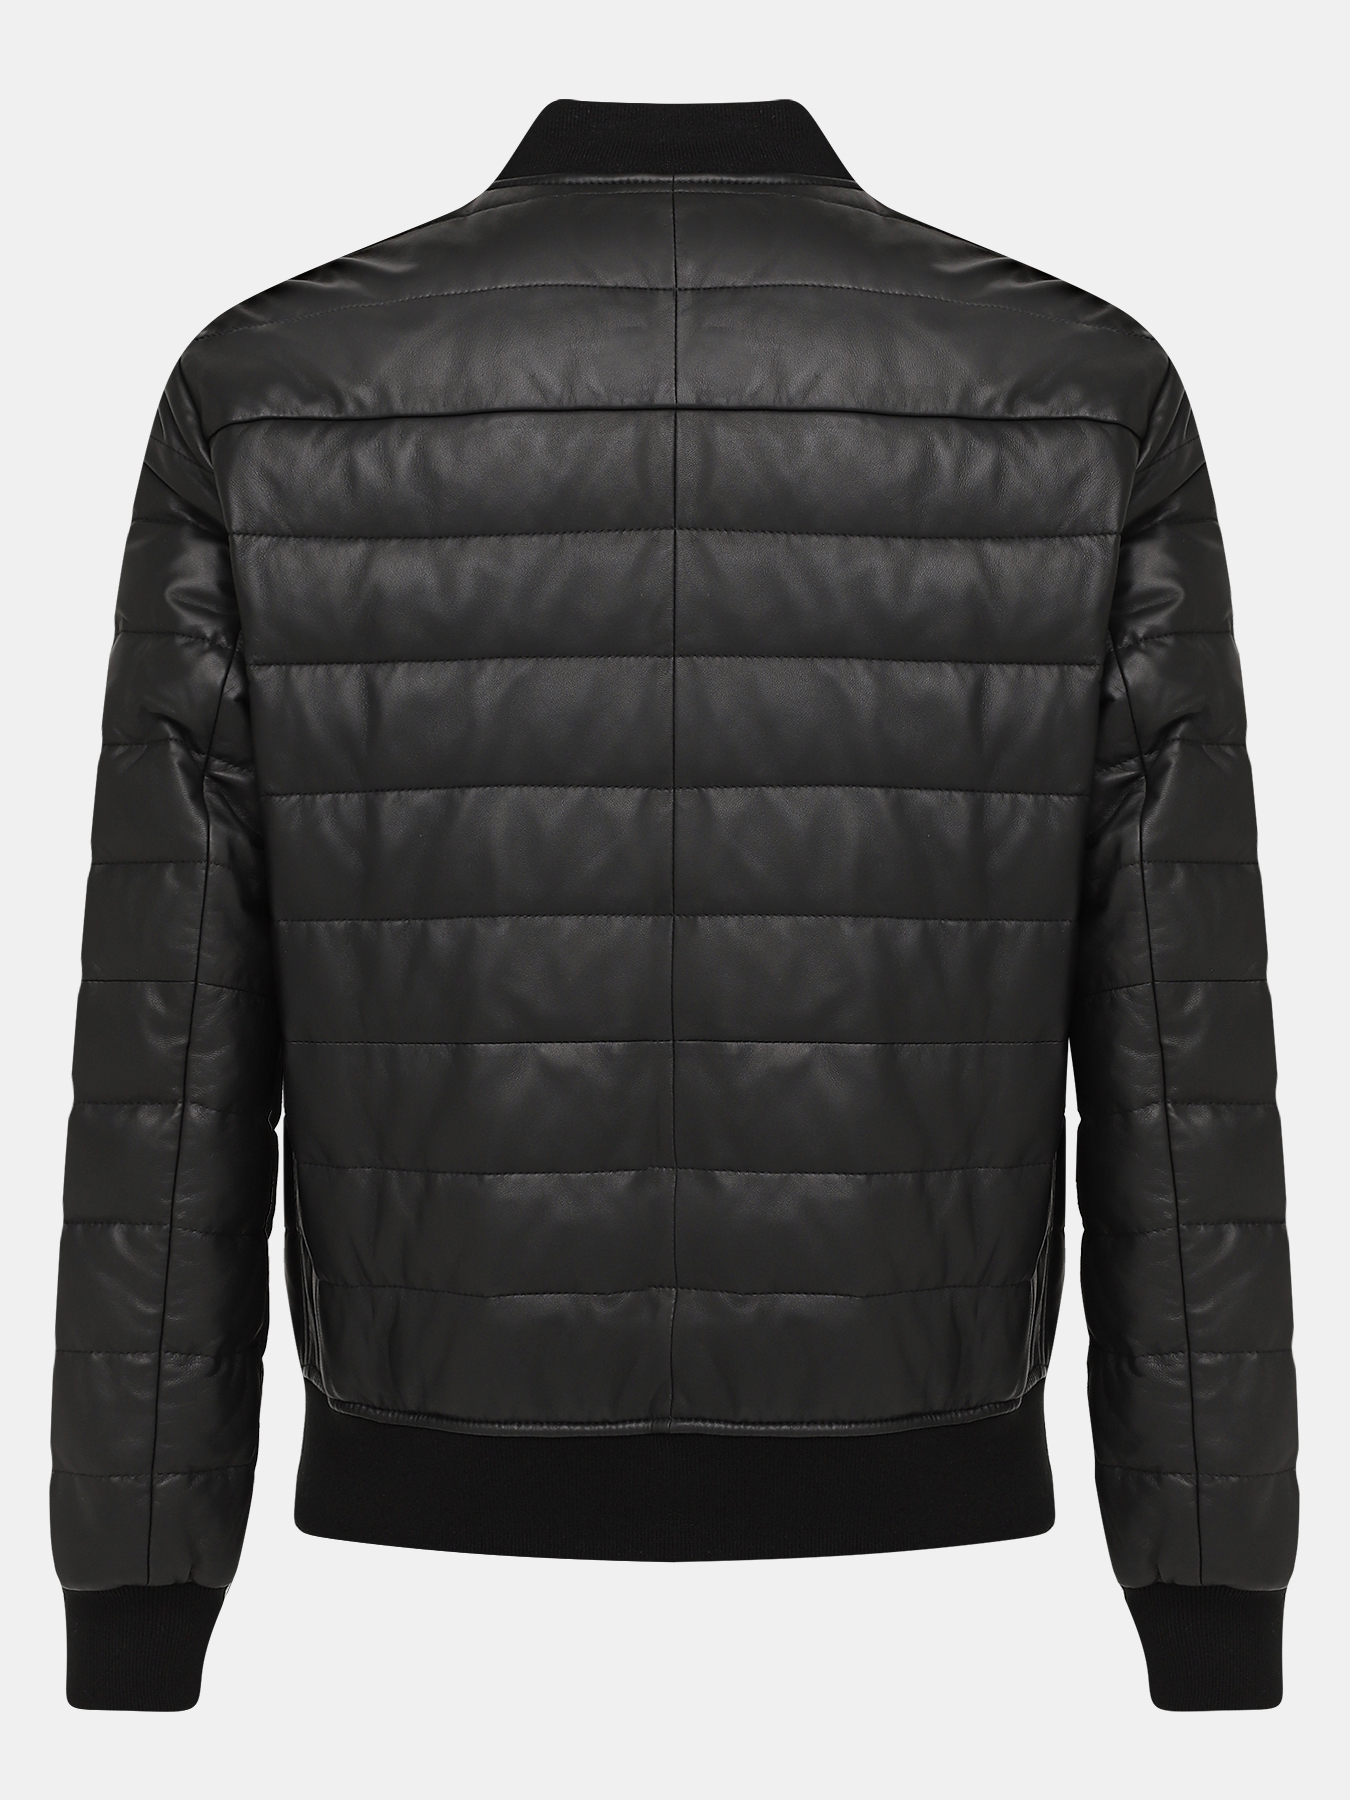 Кожаная куртка Alessandro Manzoni 390982-026, цвет черный, размер 50 - фото 3